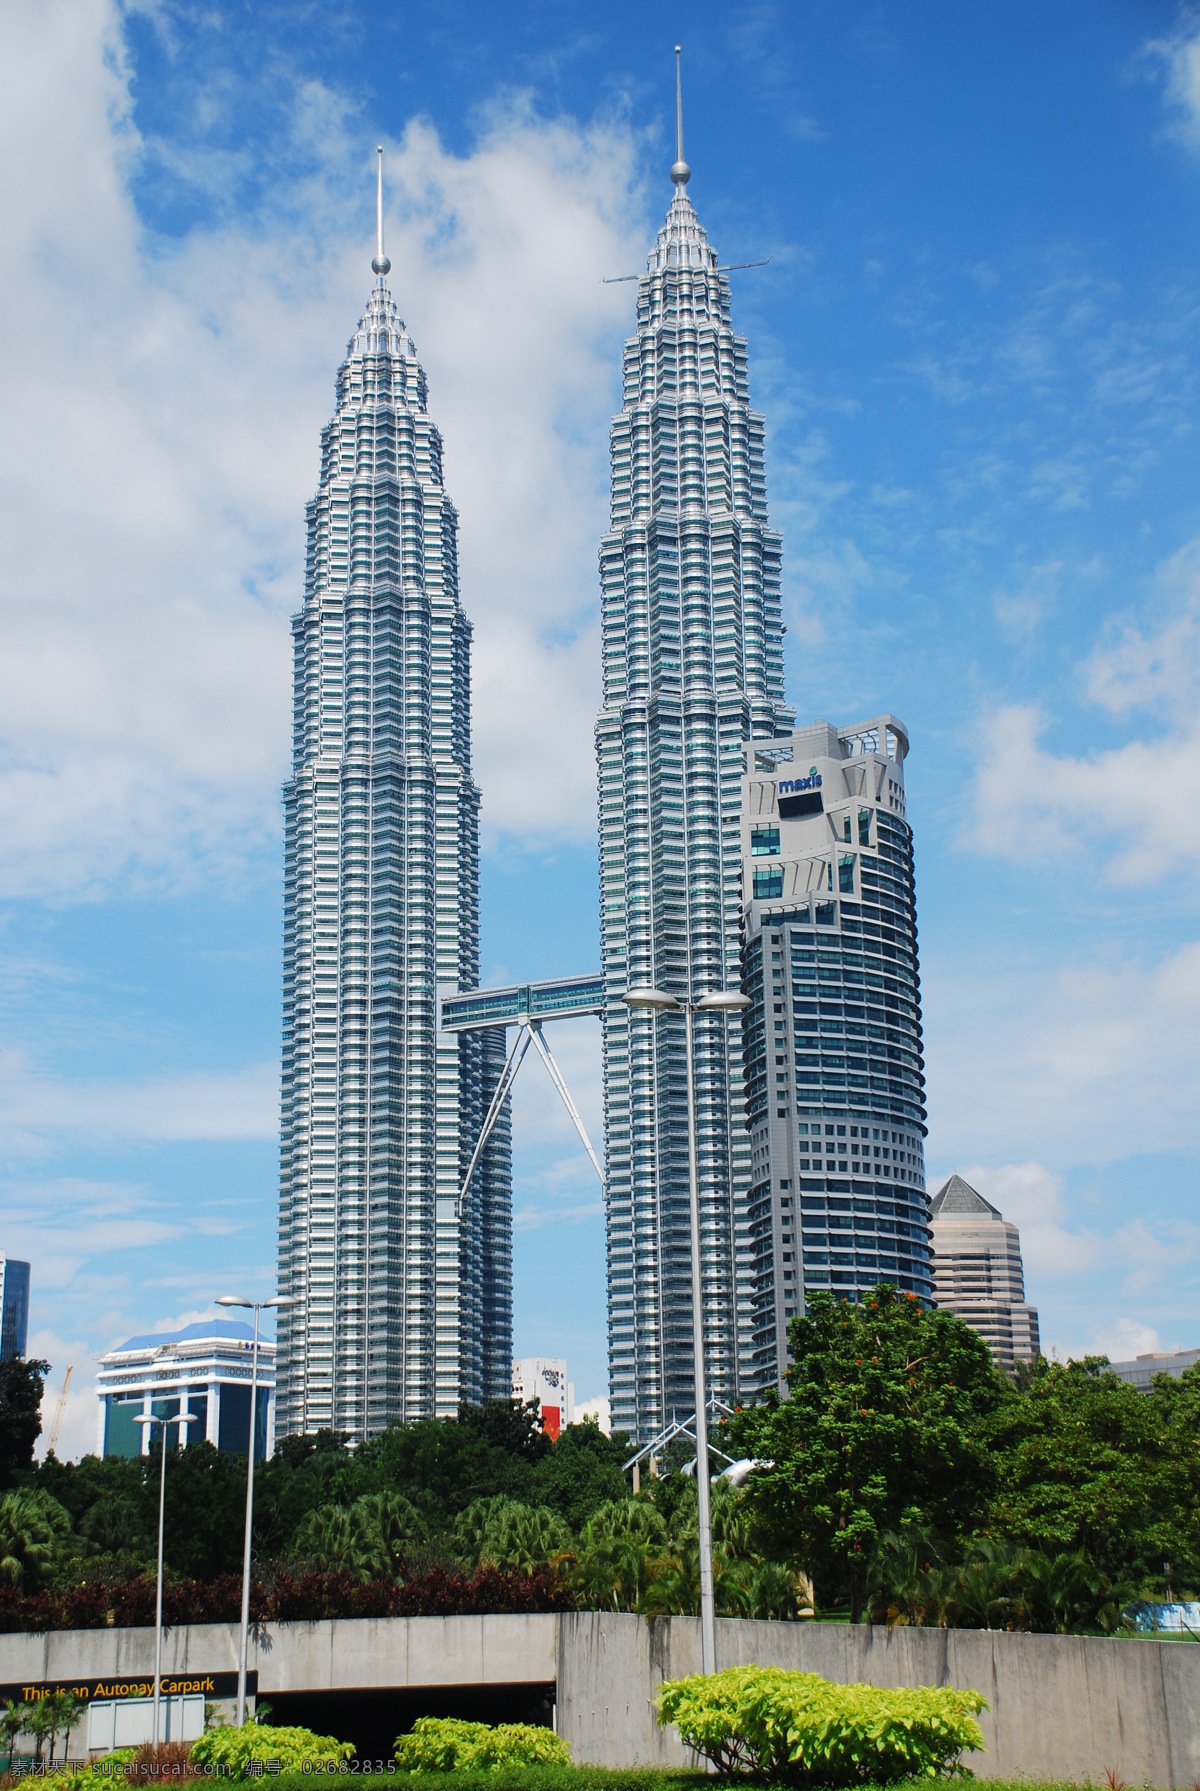 马来西亚 双子 塔 世界 摩天大楼 远景 双子塔 世界第一 高楼耸立 蓝天白云 国外旅游 旅游摄影